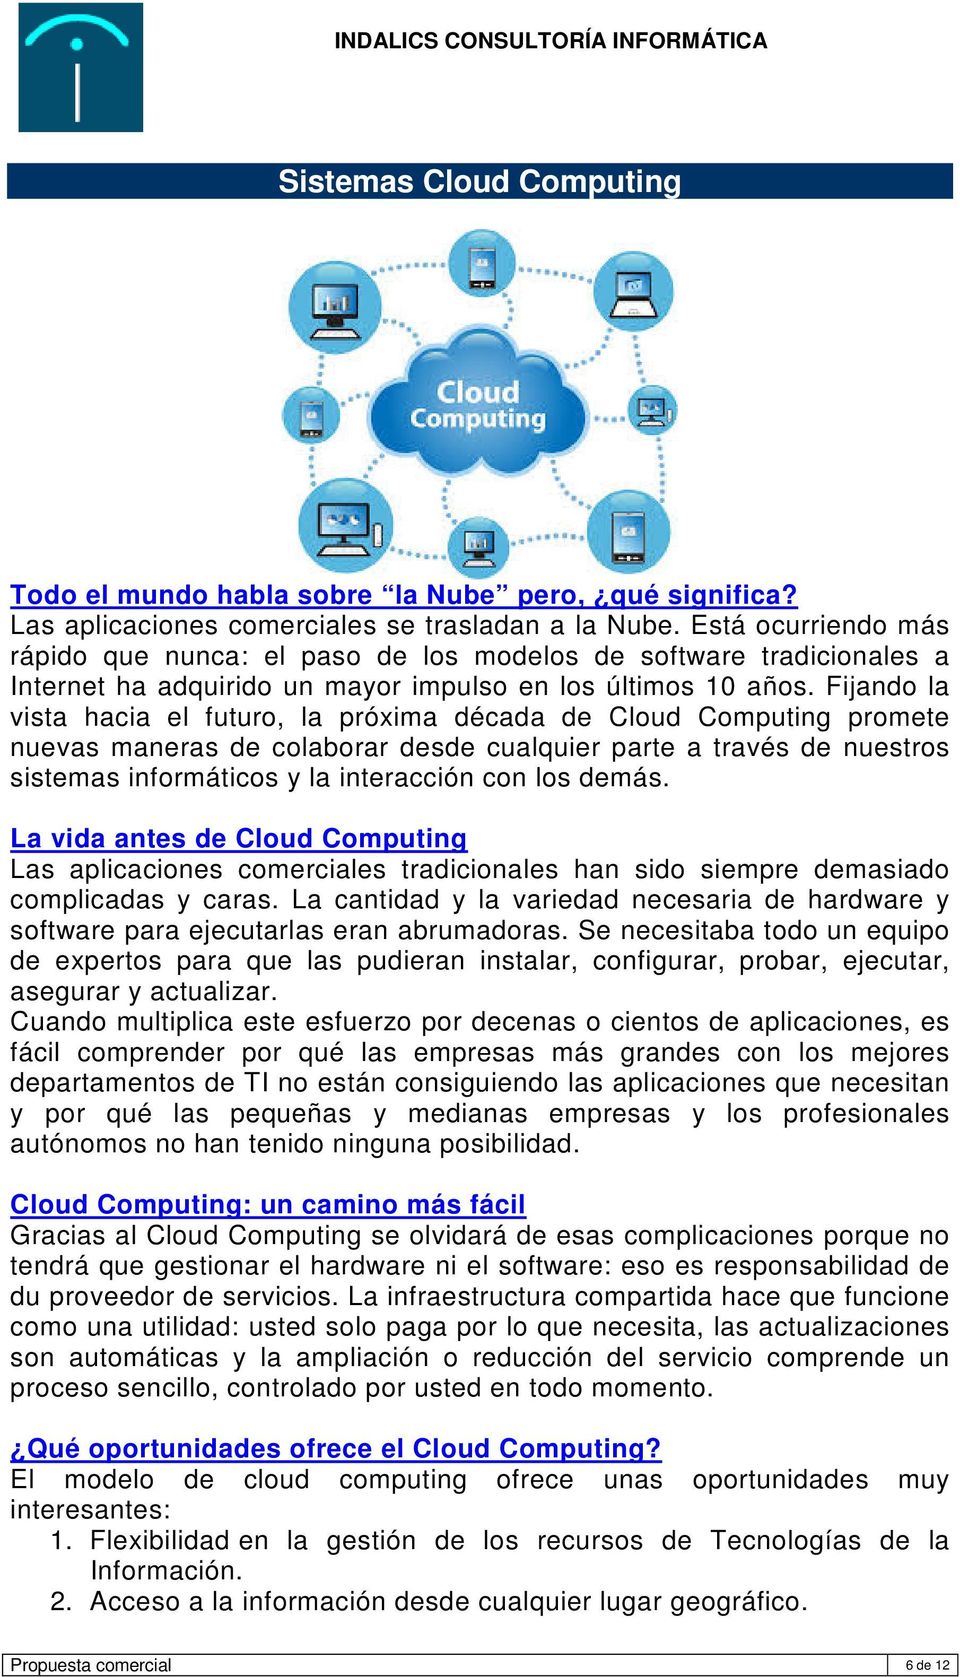 Fijando la vista hacia el futuro, la próxima década de Cloud Computing promete nuevas maneras de colaborar desde cualquier parte a través de nuestros sistemas informáticos y la interacción con los